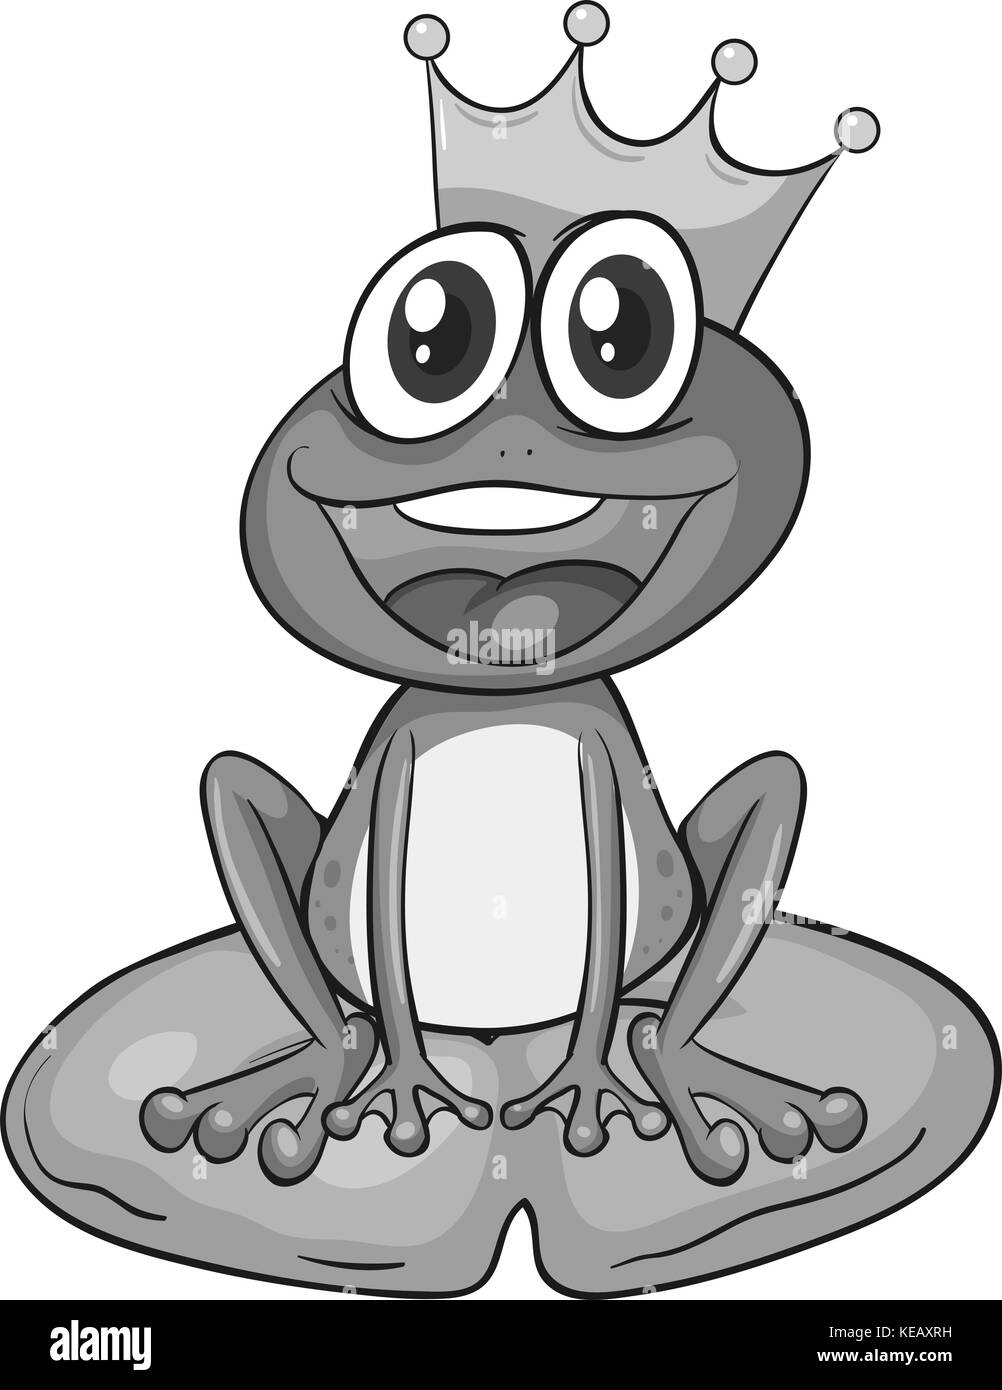 Happy prince grenouille sur la feuille de nénuphar Illustration de Vecteur